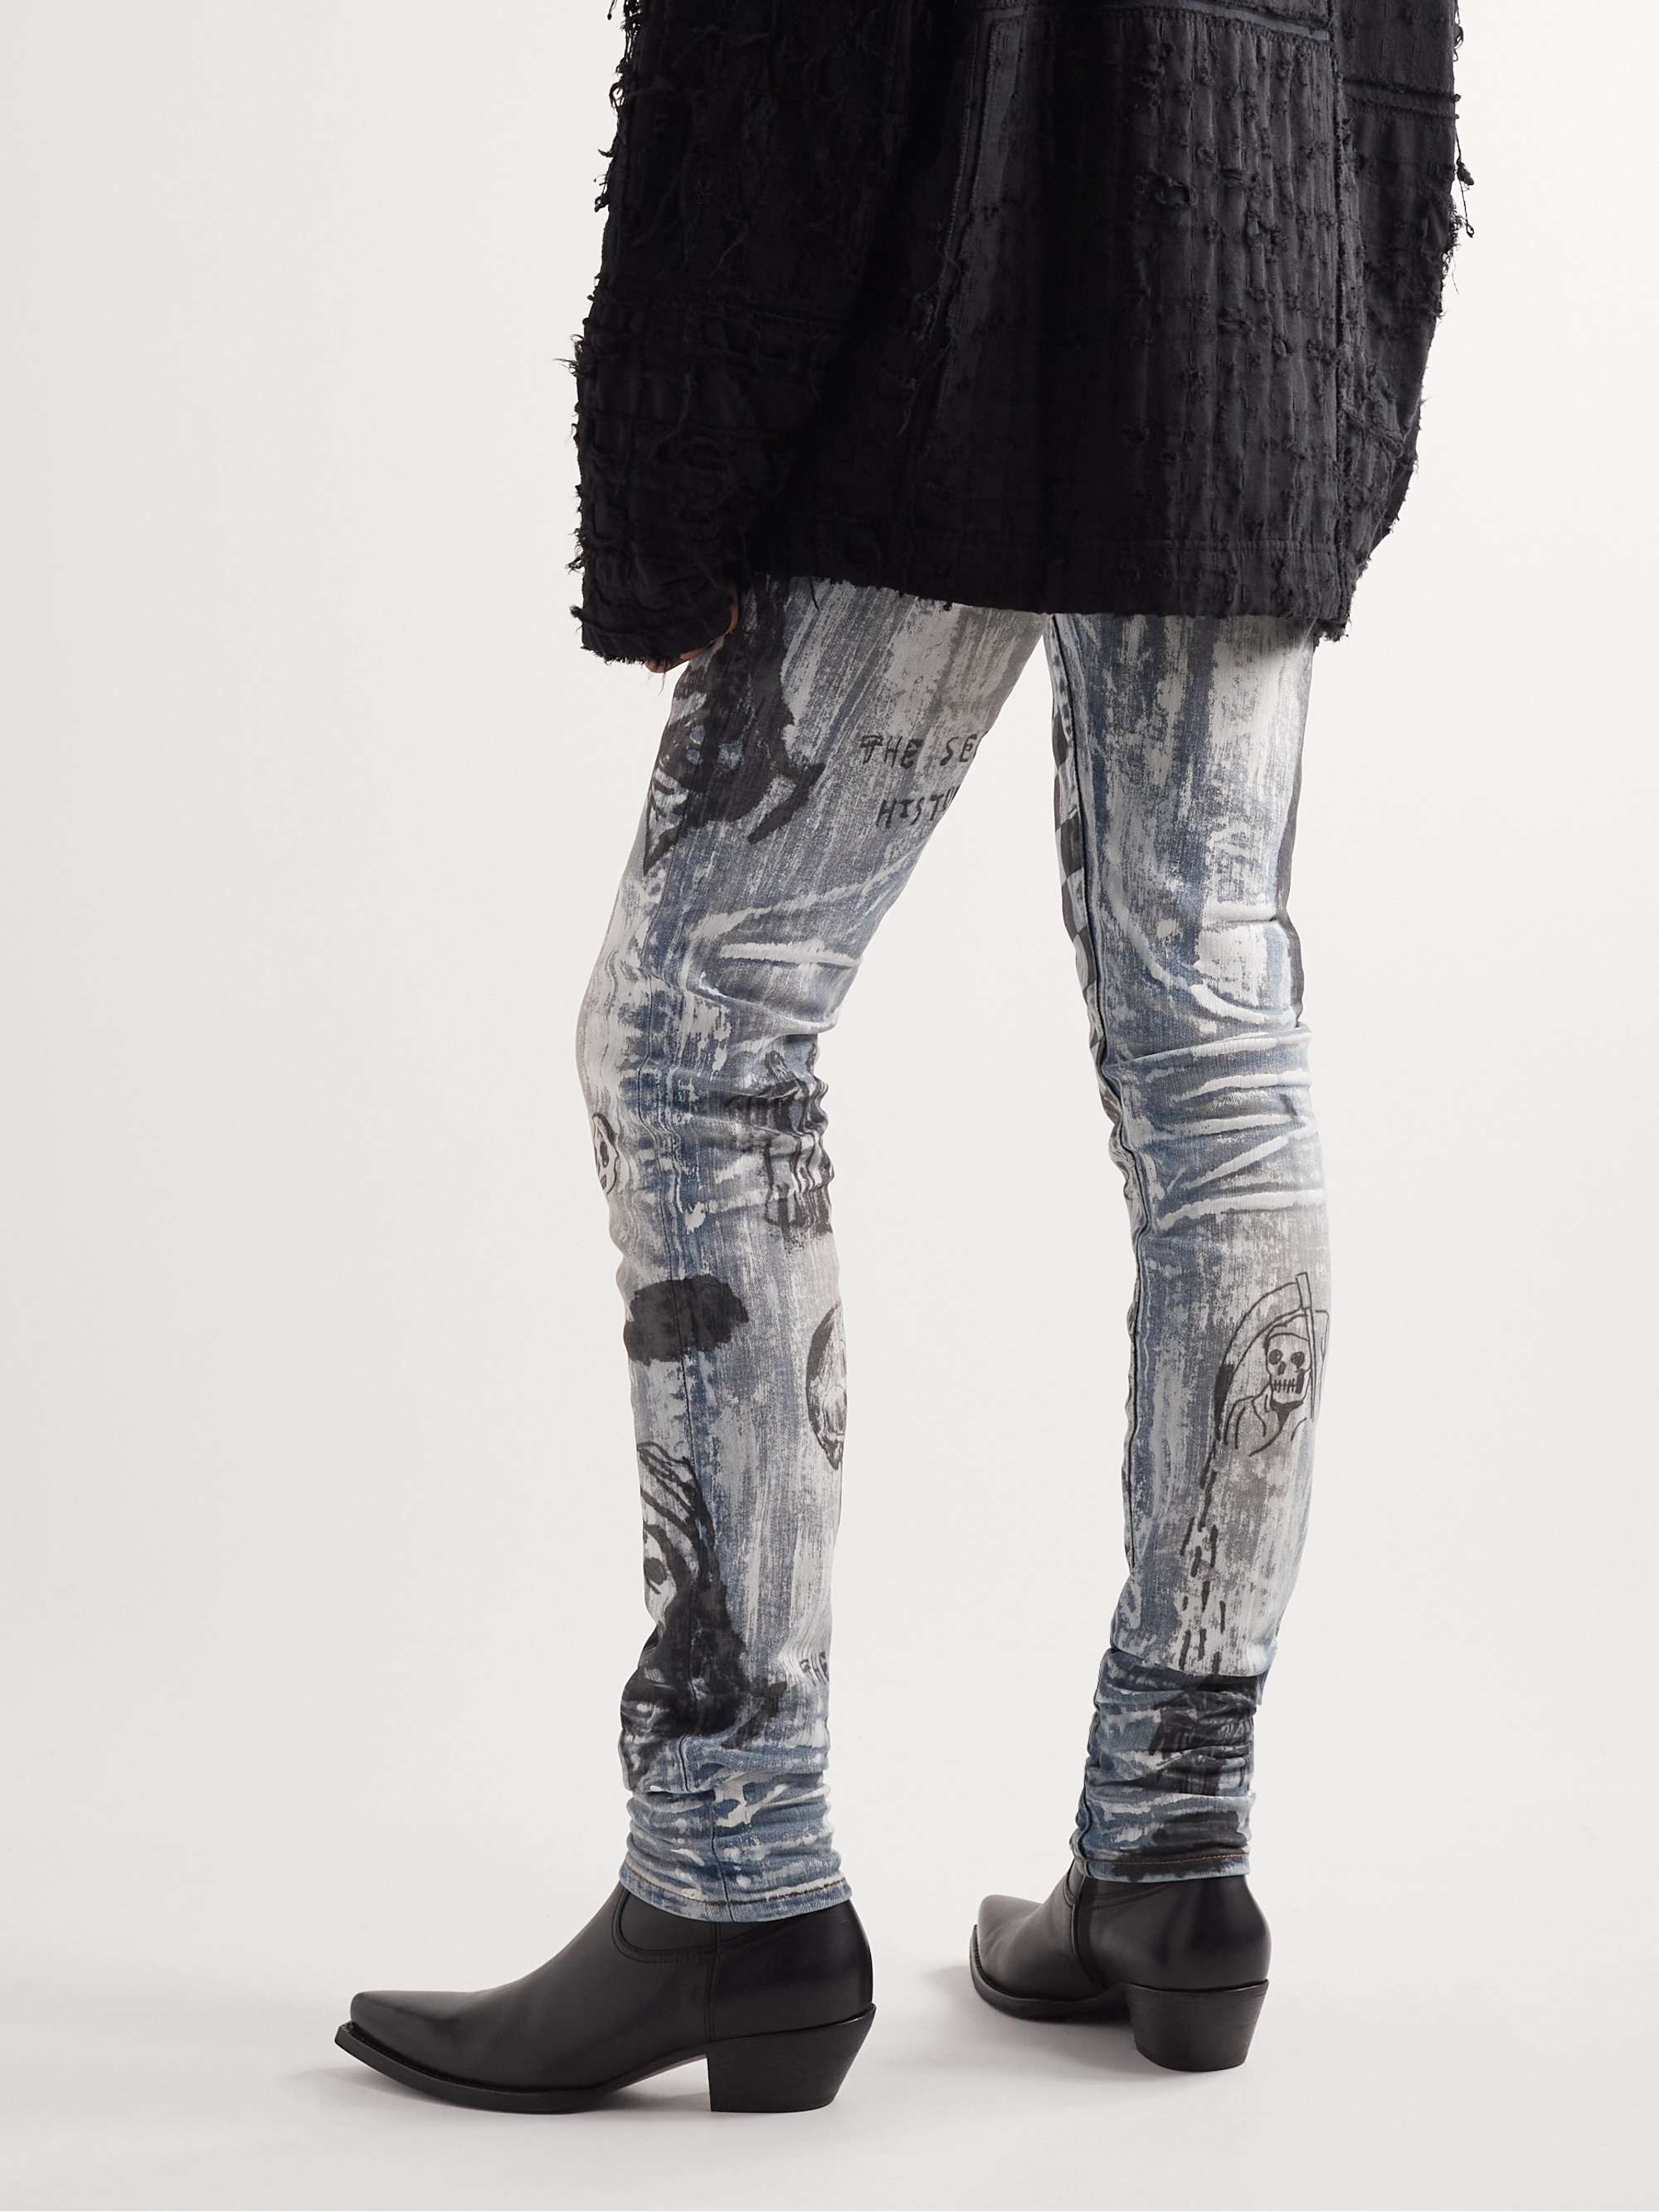 AMIRI + Wes Lang Skinny-Fit Printed Jeans